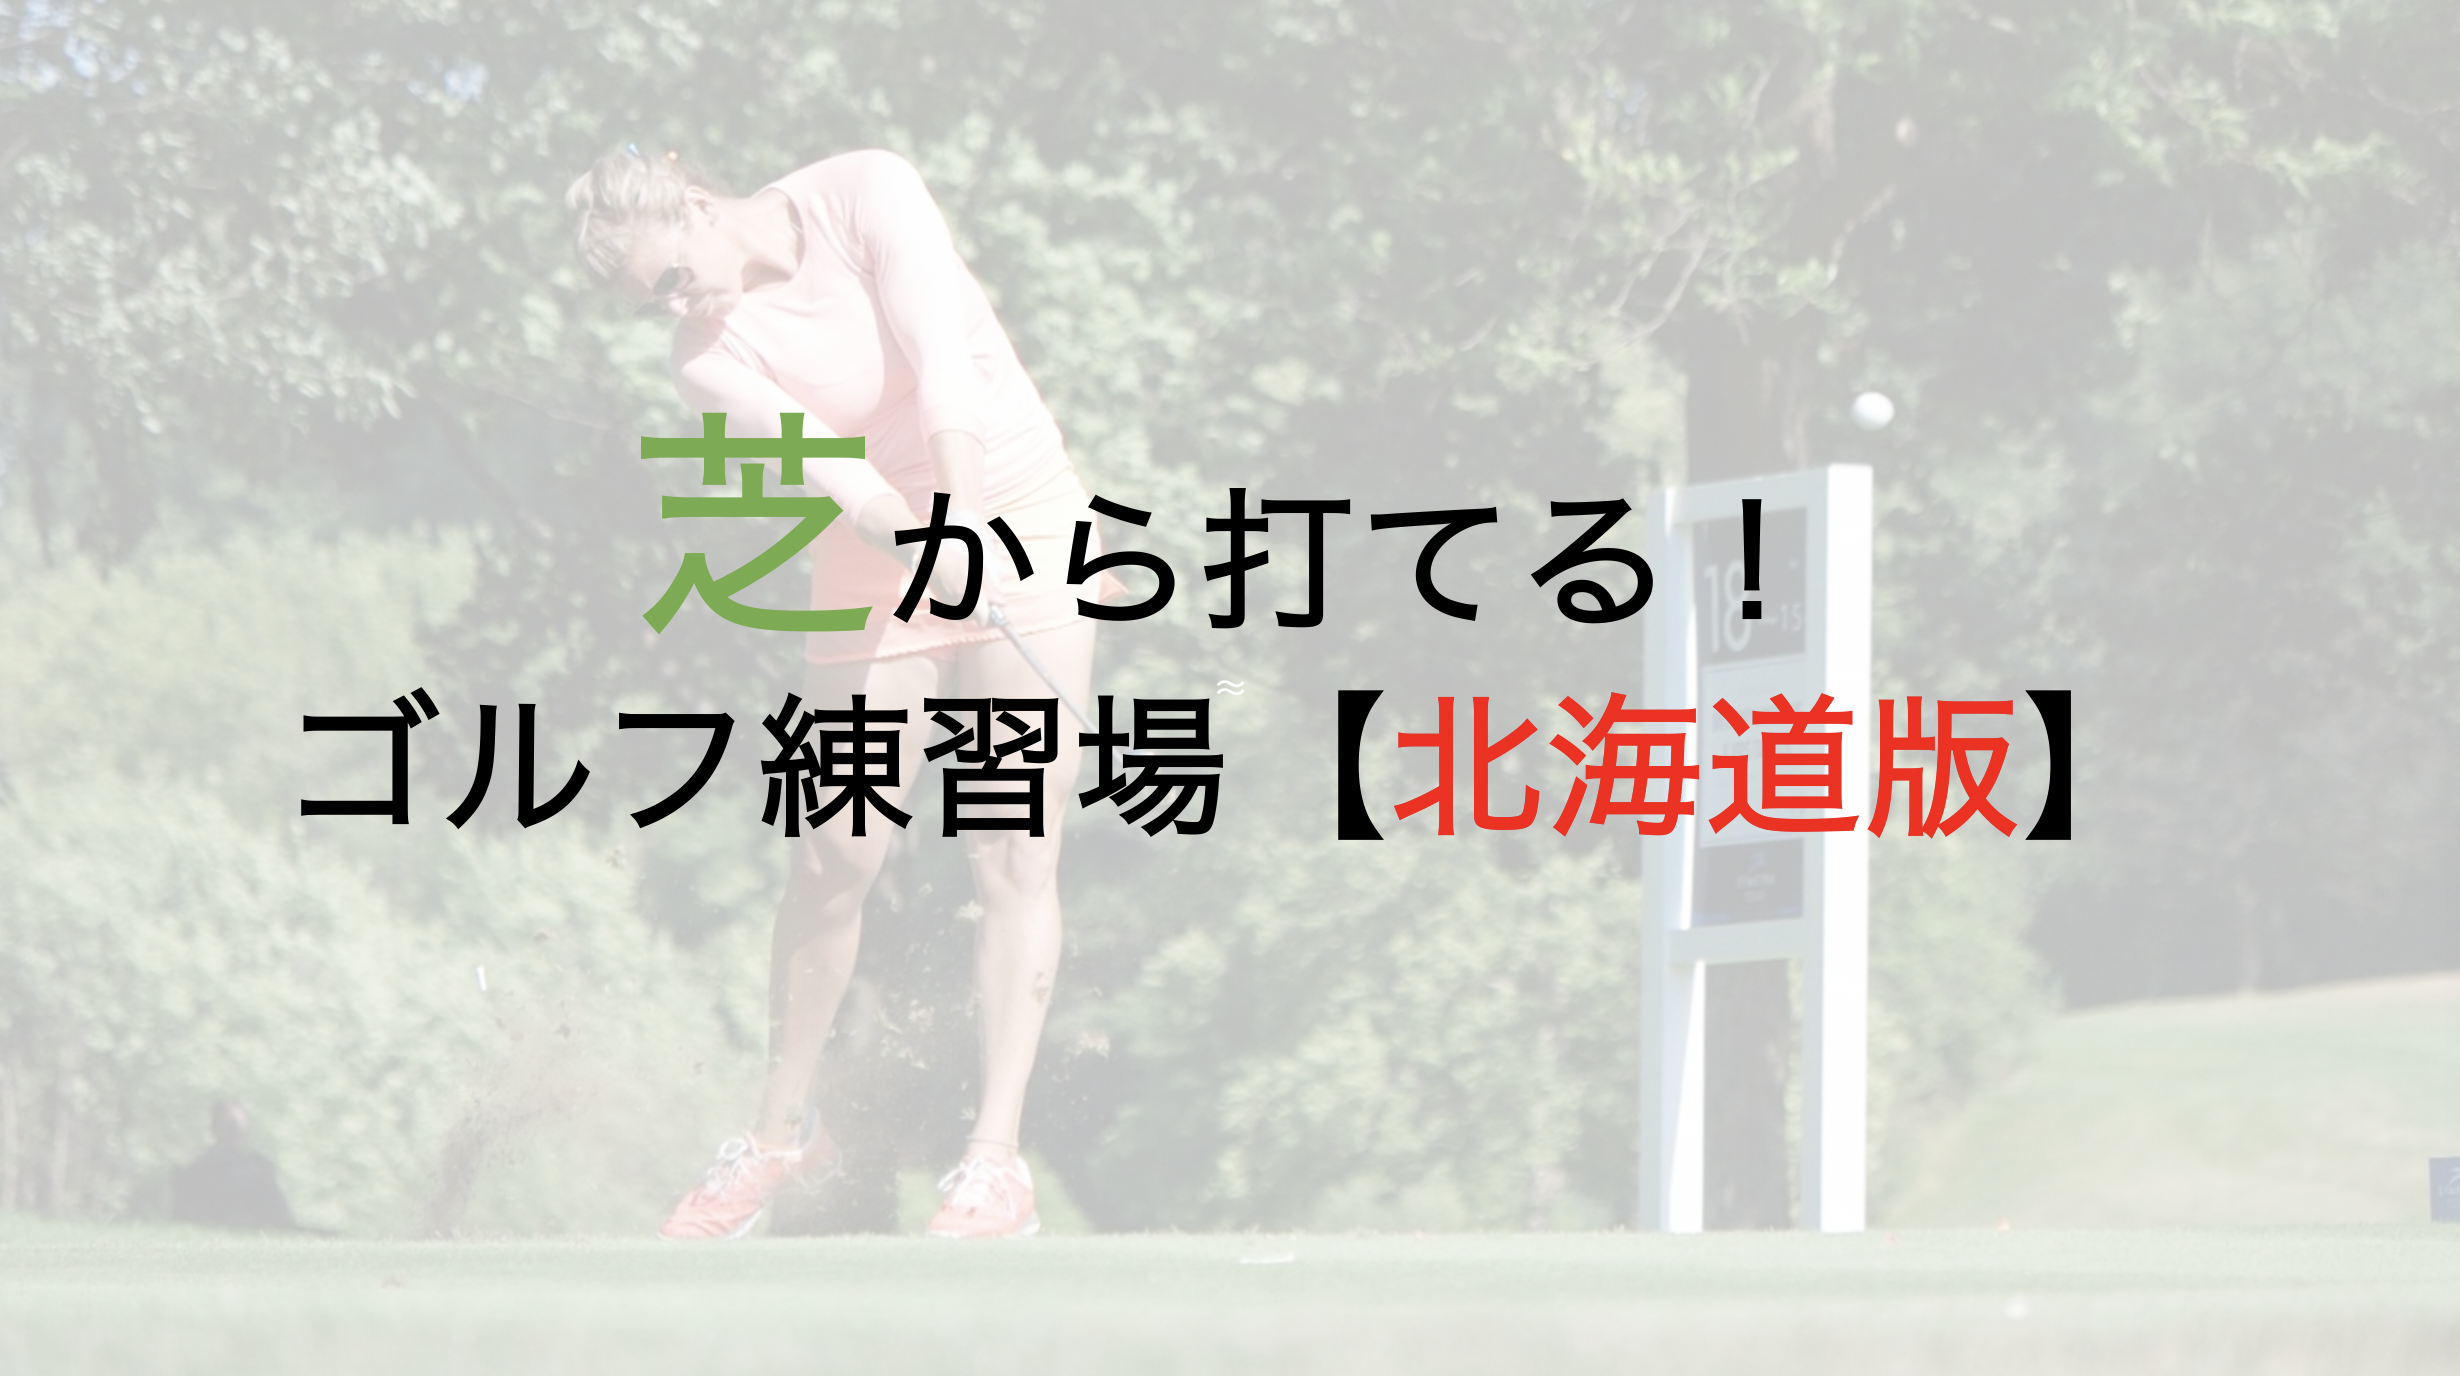 マットではなく芝から打てるゴルフ練習場【北海道版】